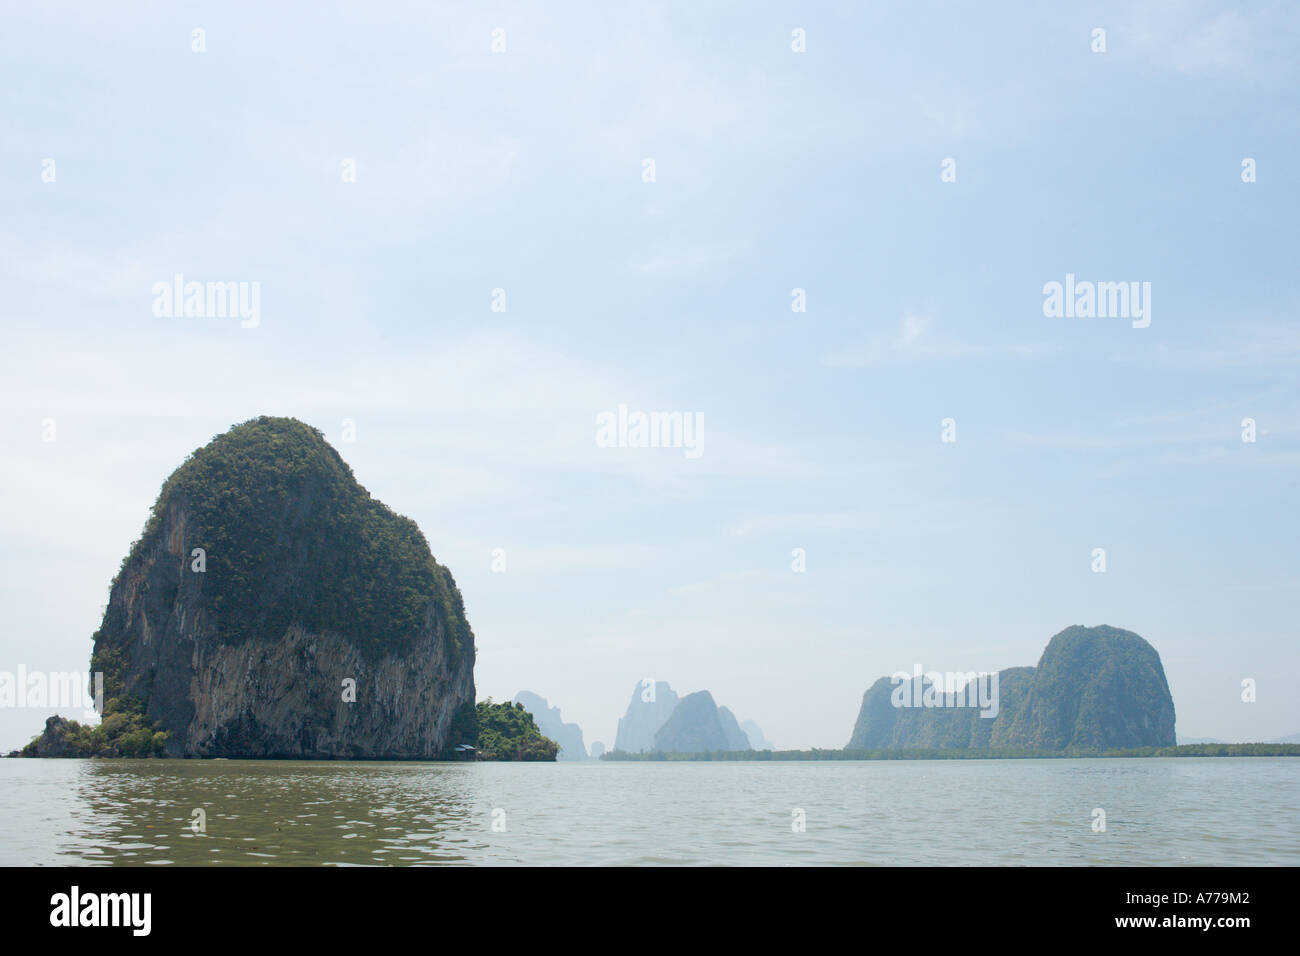 Longtail Boat Trip to James Bond Island, Ao Phang Nga National Park, Phang Nga, Thailand Stock Photo